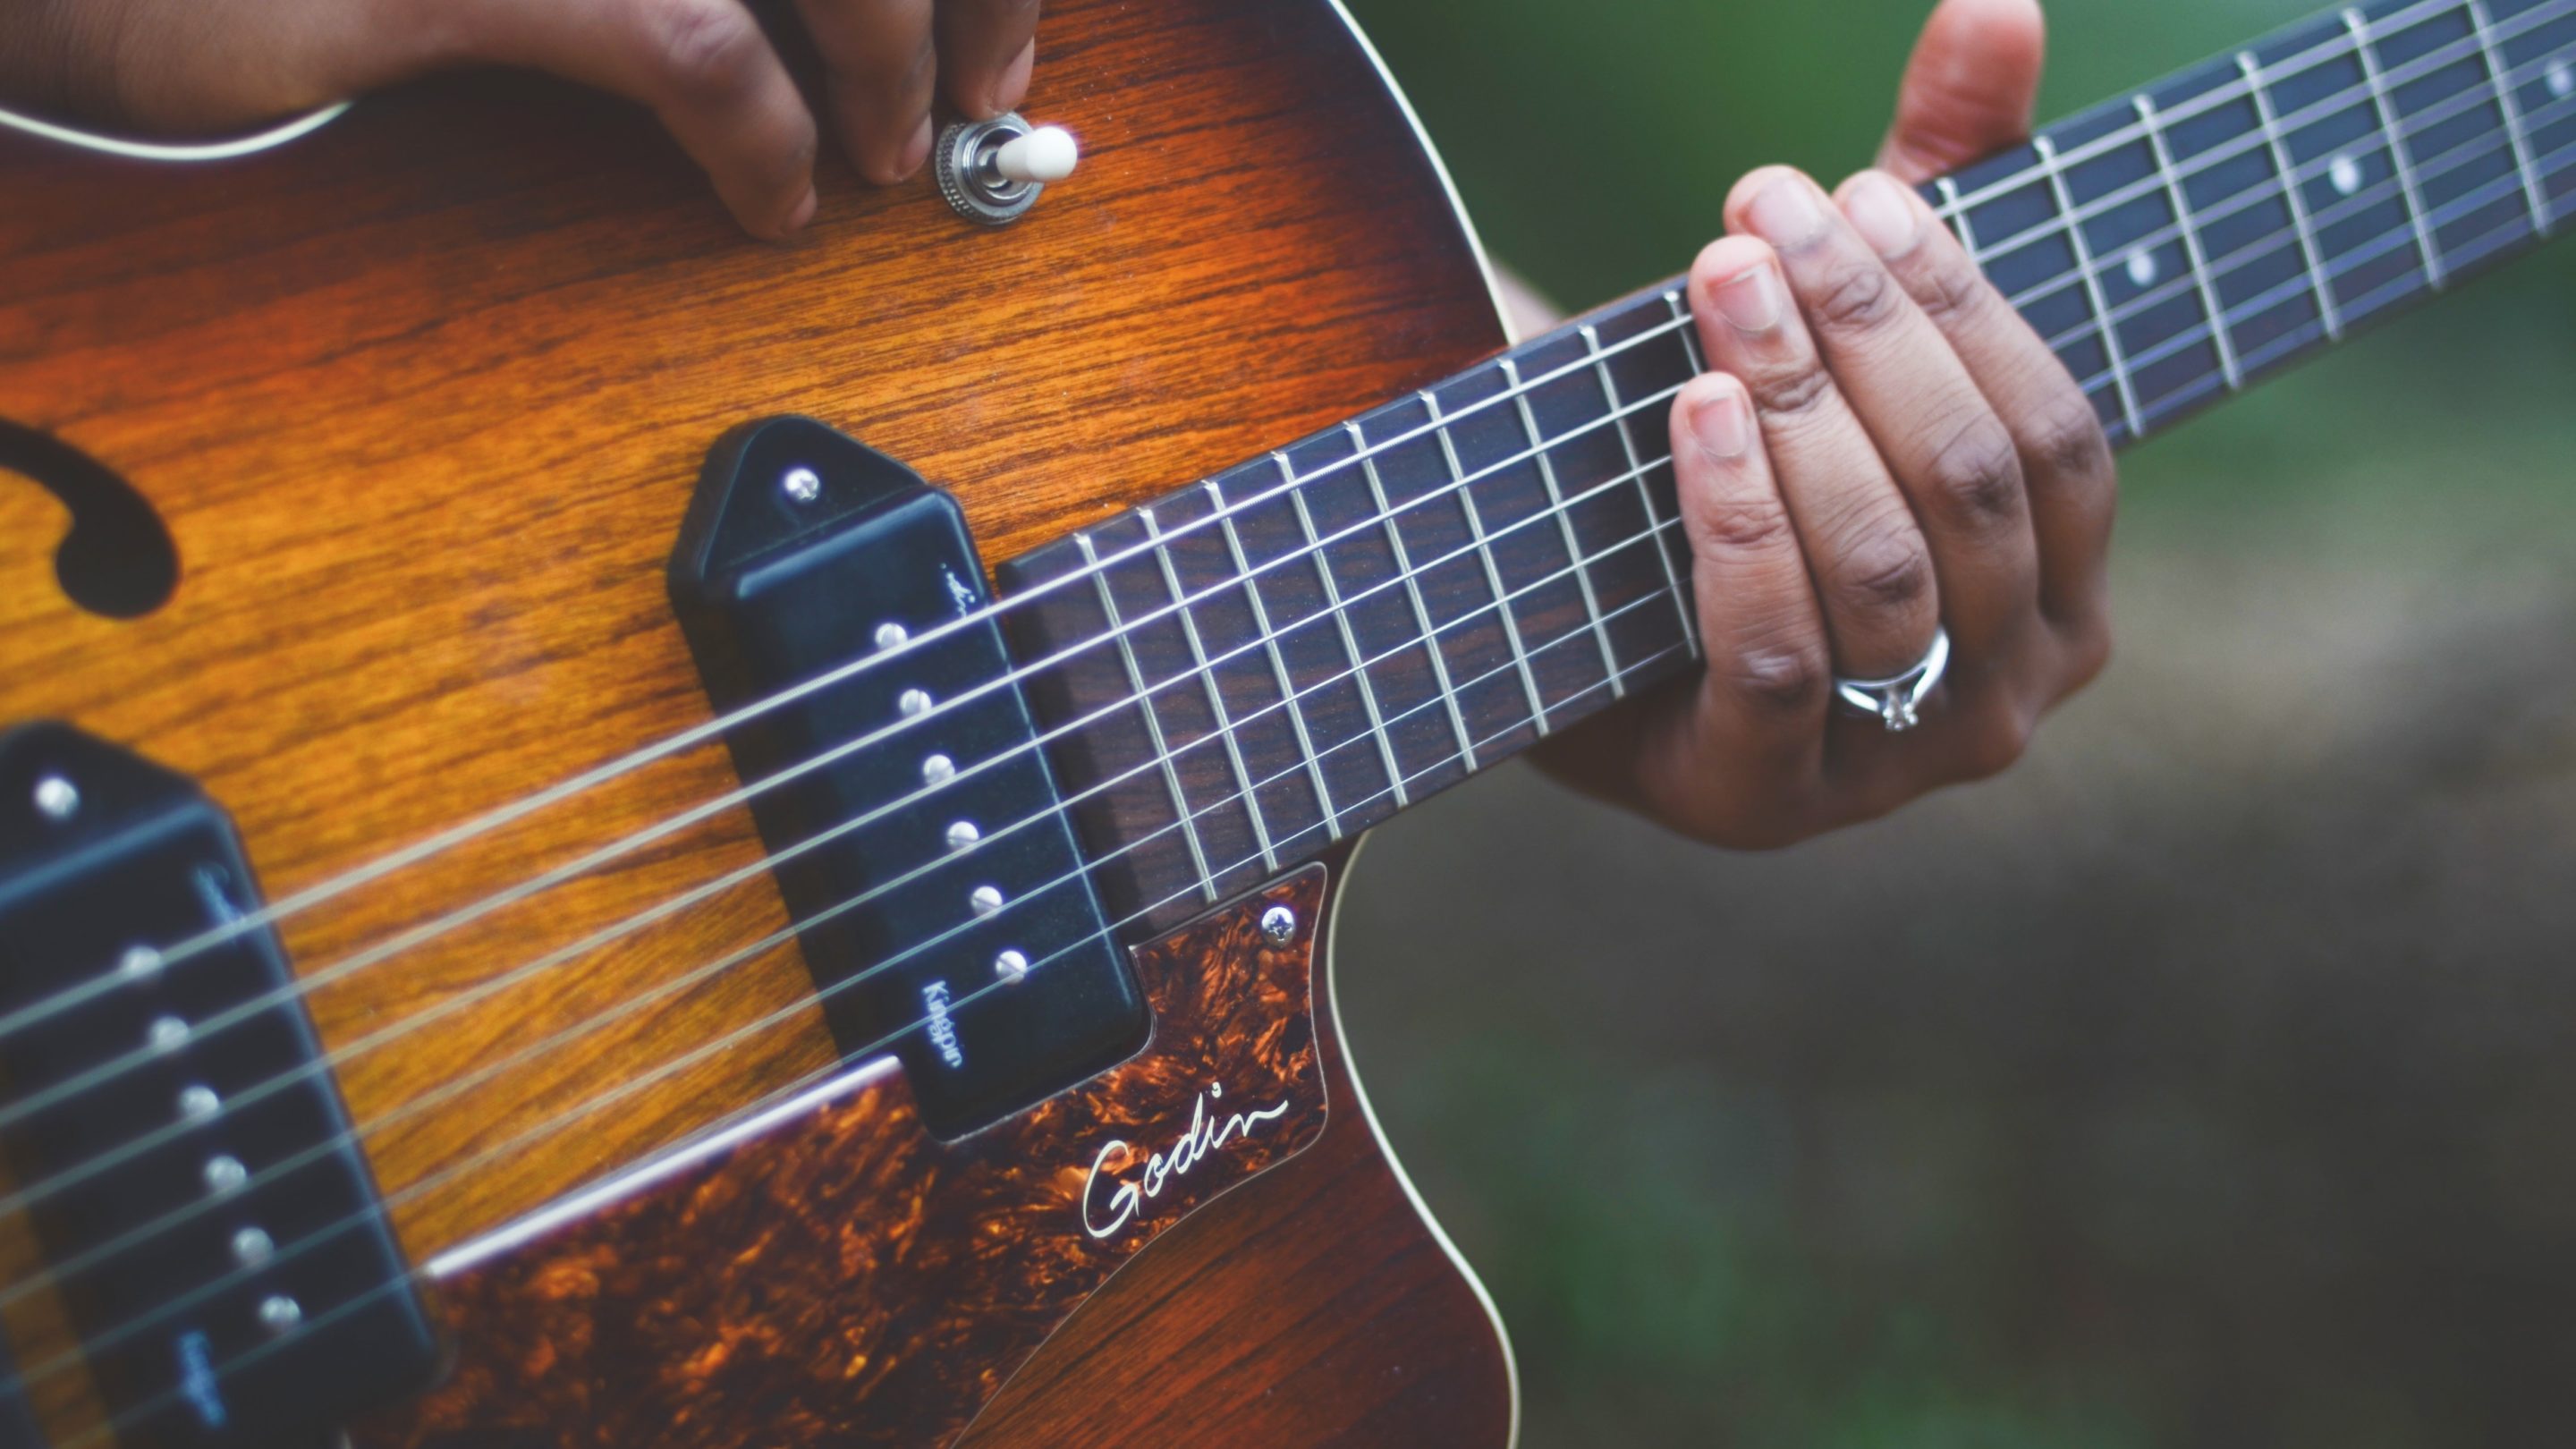 Et nærbillede af en person, der spiller en akustisk guitar, mens han viser indviklede fingerplukningsevner.